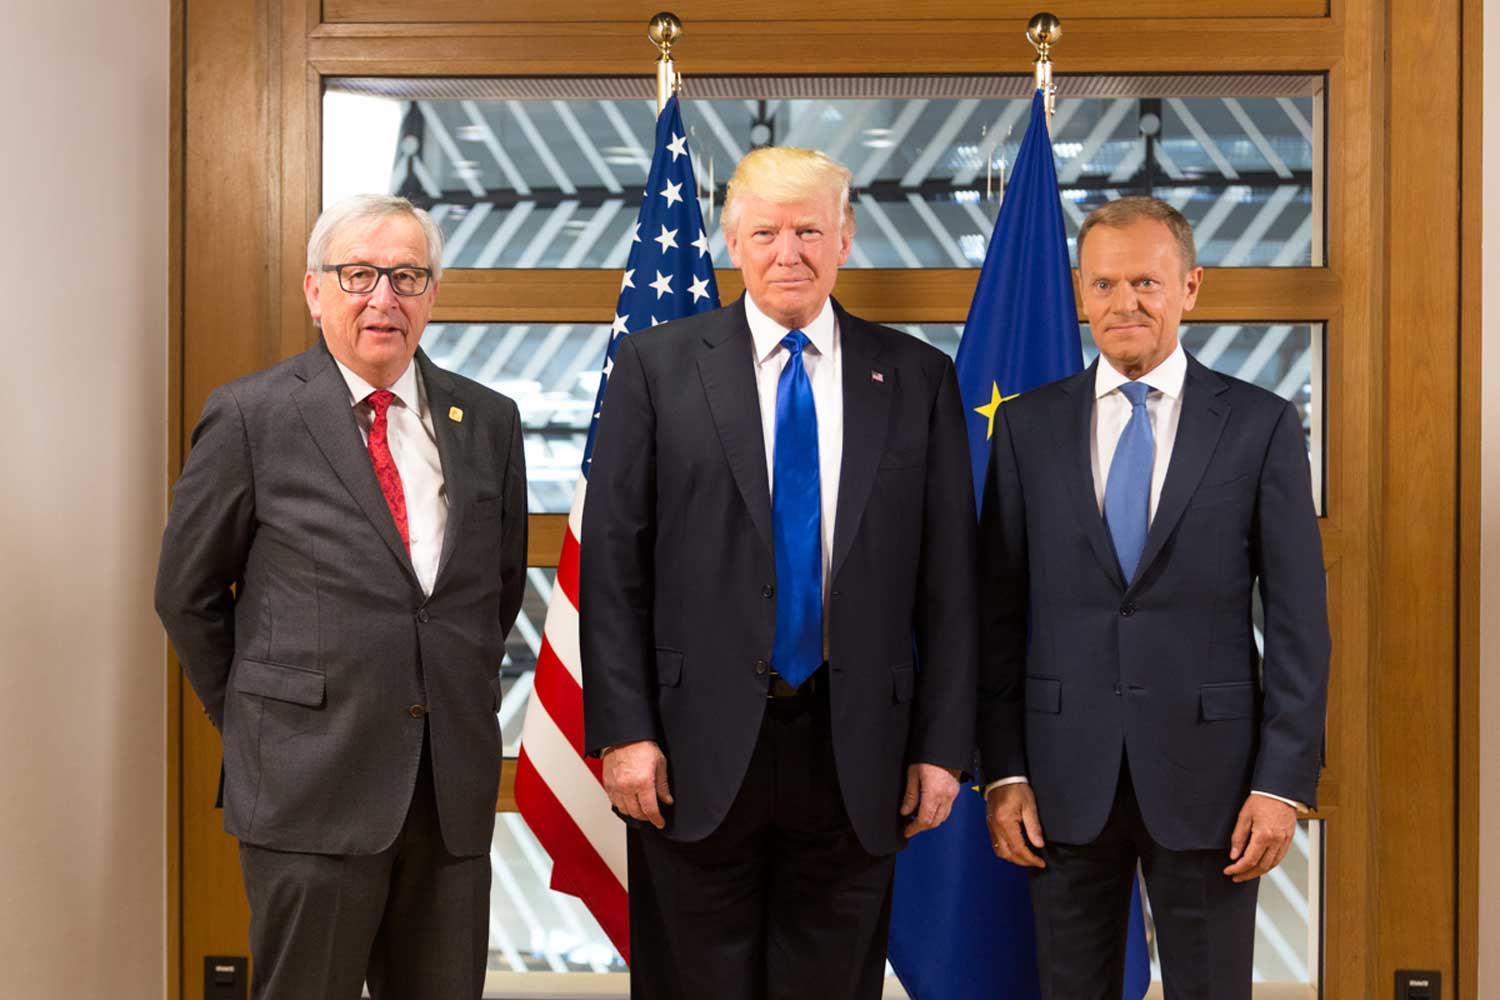 Presidentti Trump tapasi Euroopan komission puheenjohtaja Jean-Claude Junckerin ja Eurooppa-neuvoston puheenjohtaja Donald Tuskin Brysselissä 25.5.2017. Kuva: Official White House Photo / Shealah Craighead.